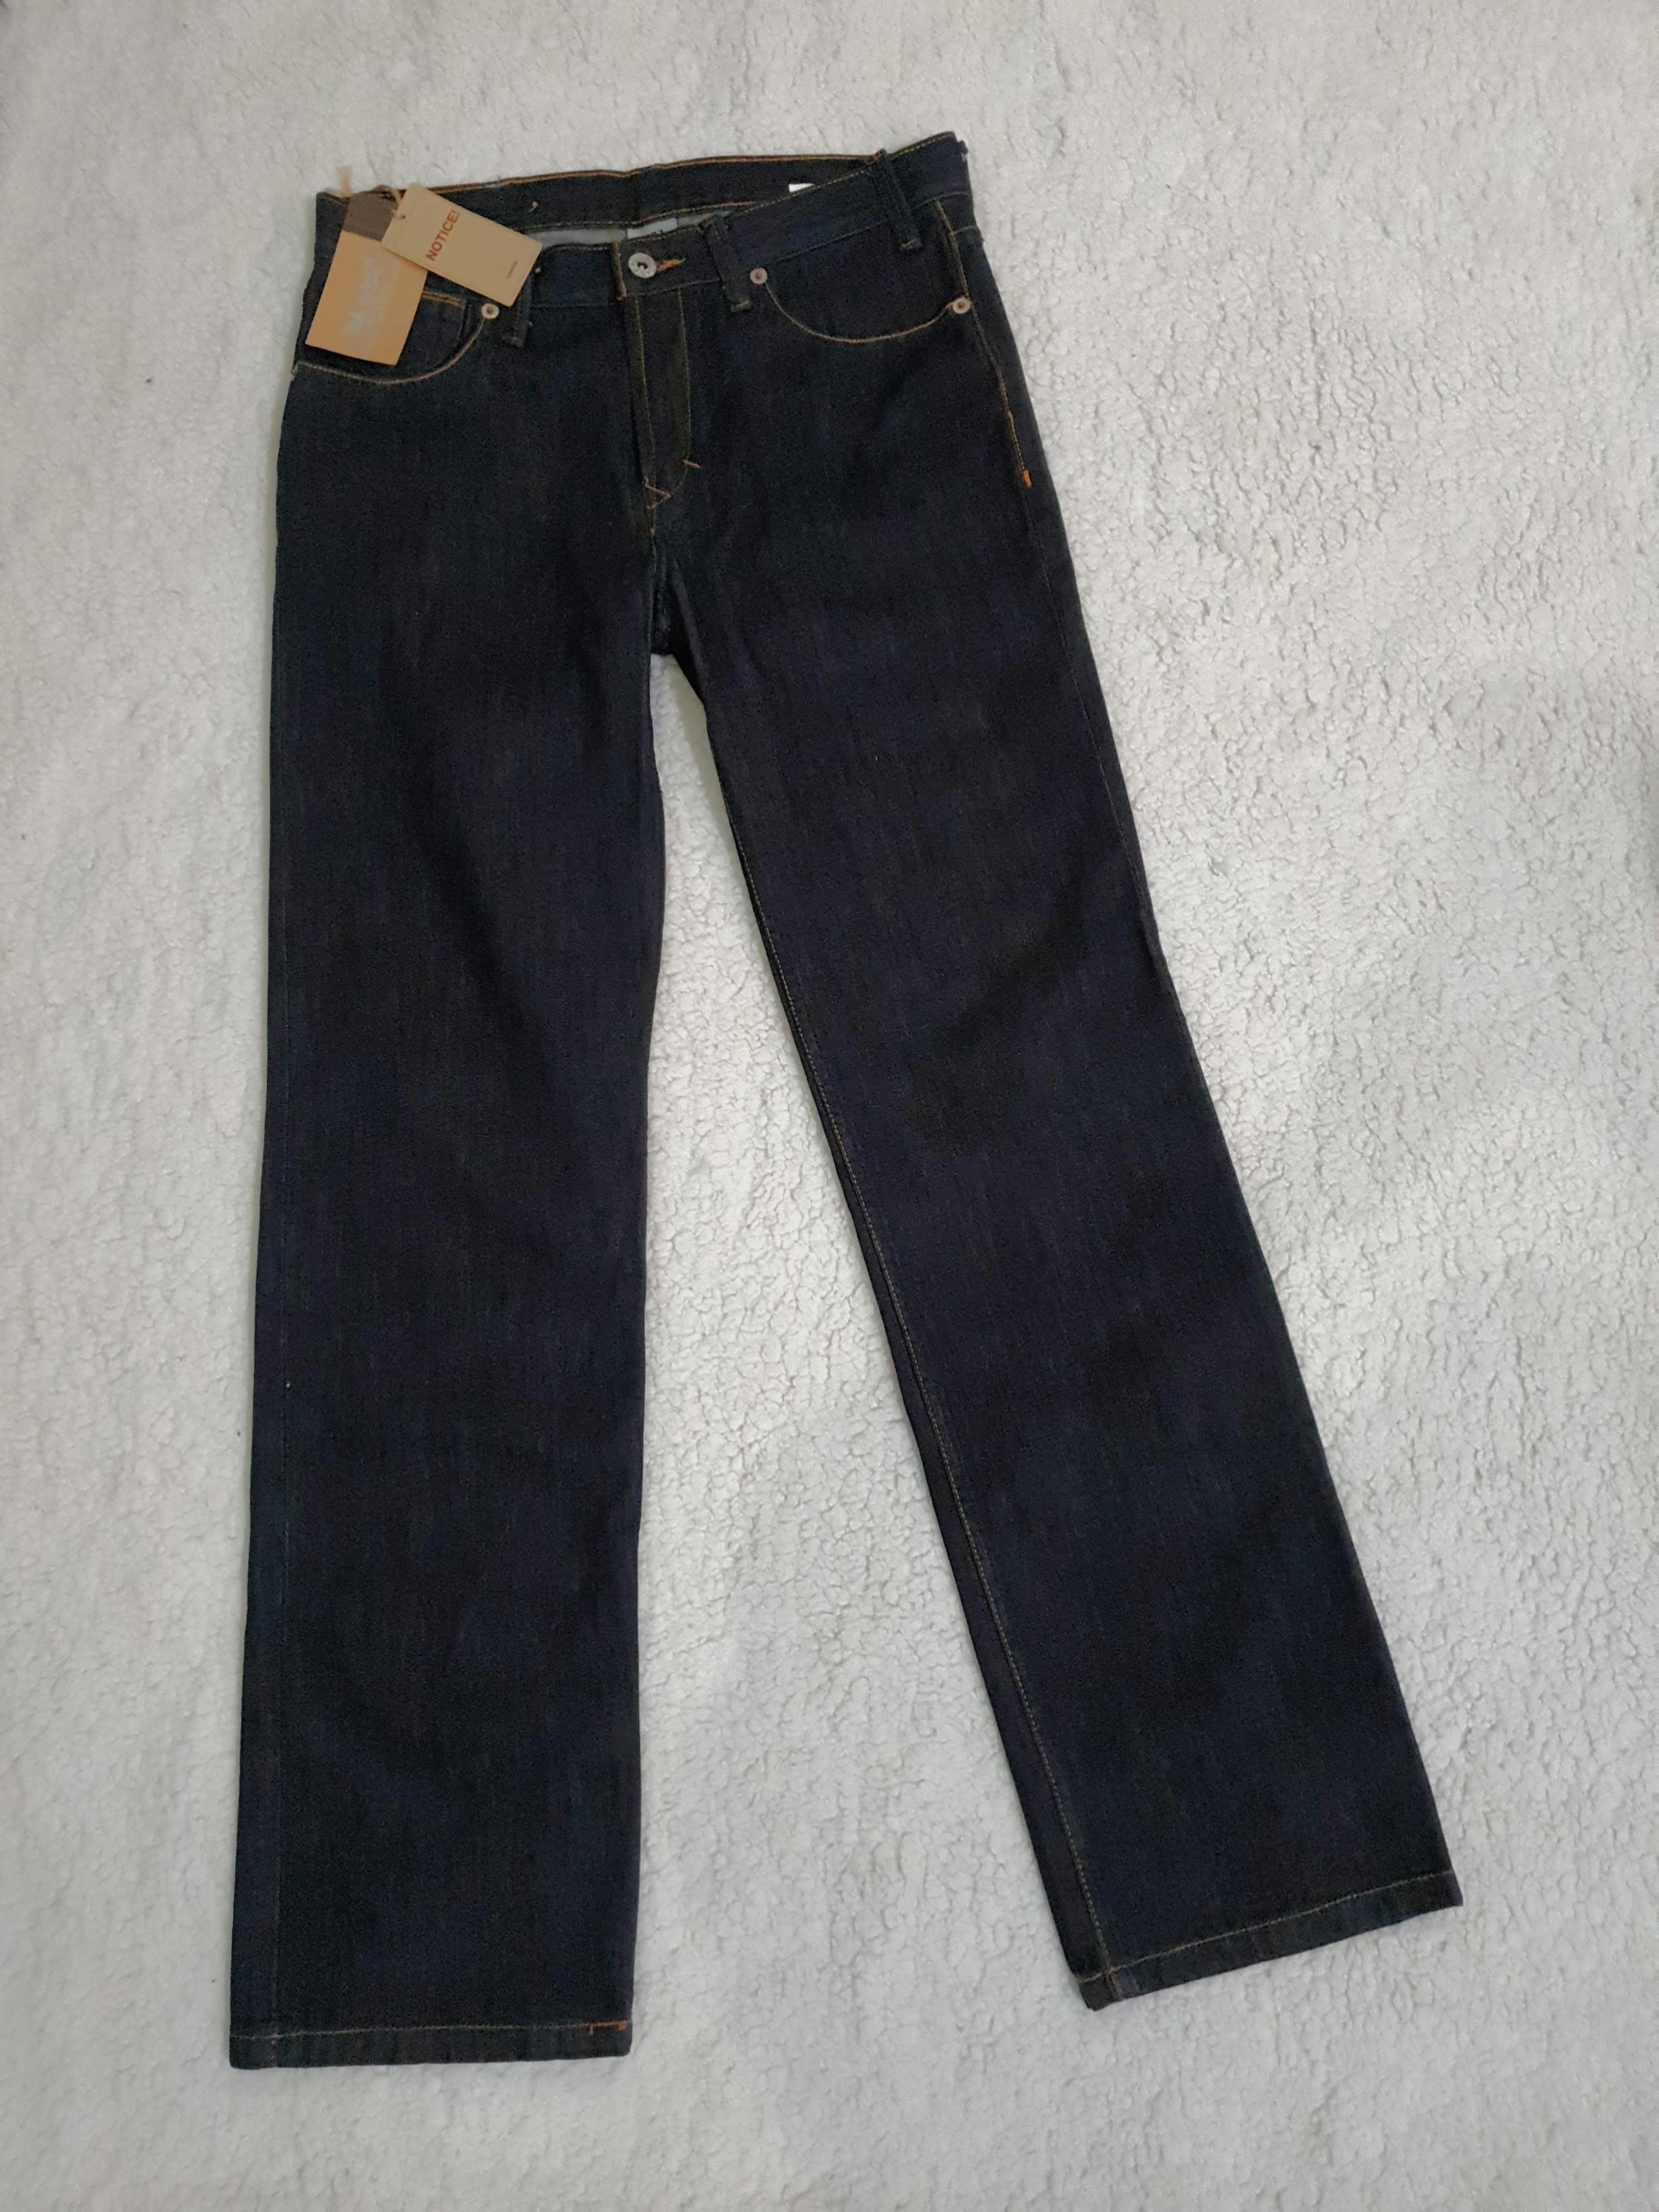 levis 523 jeans